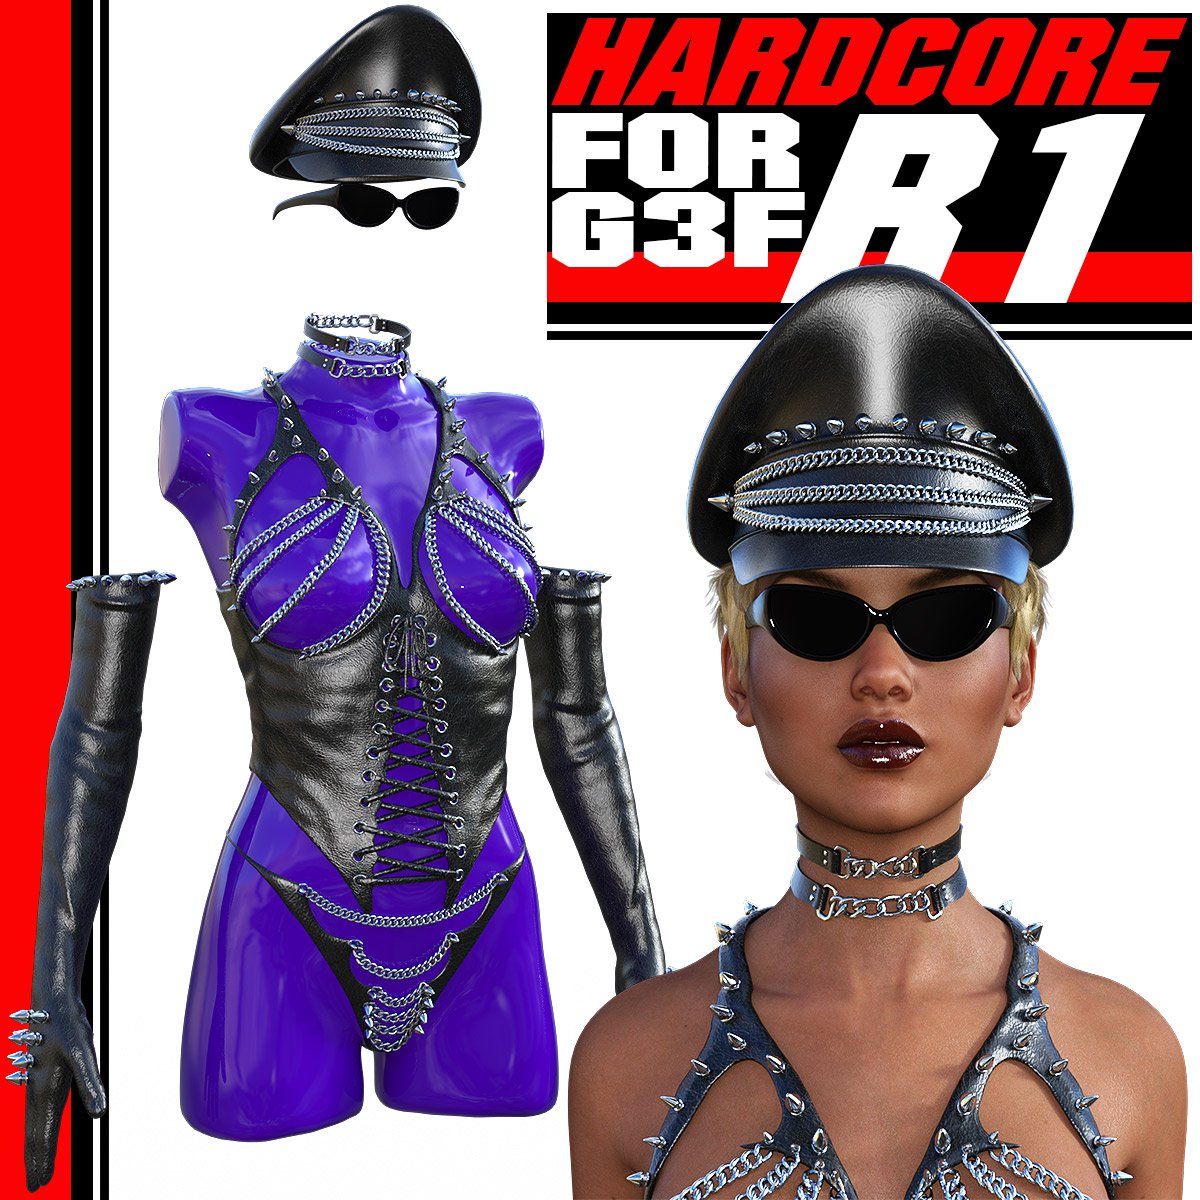 HARDCORE-R1 for G3 Females_DAZ3D下载站